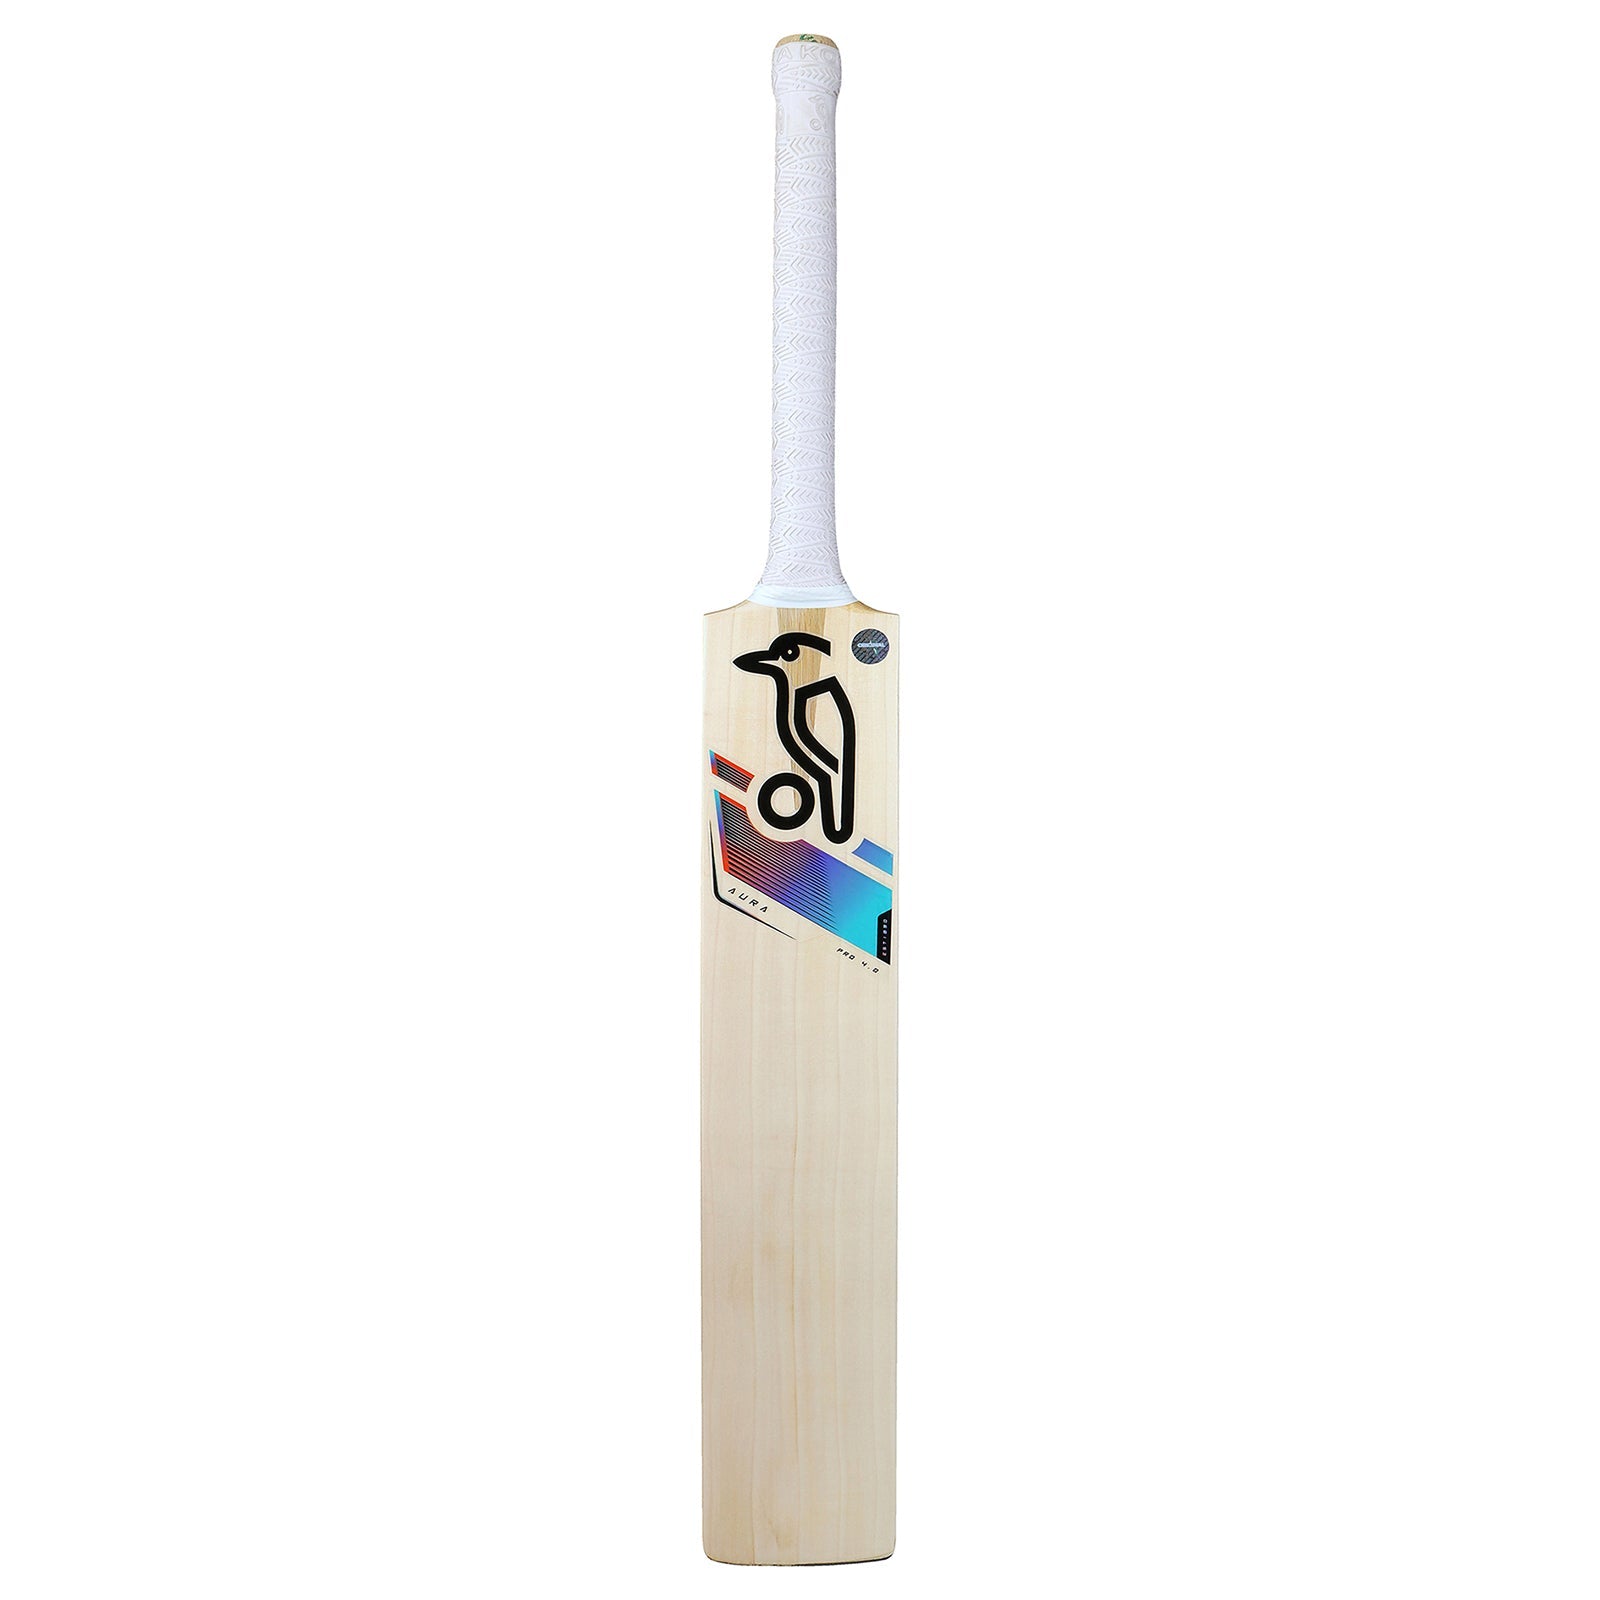 Kookaburra Aura Pro 4.0 Cricket Bat - Size 6